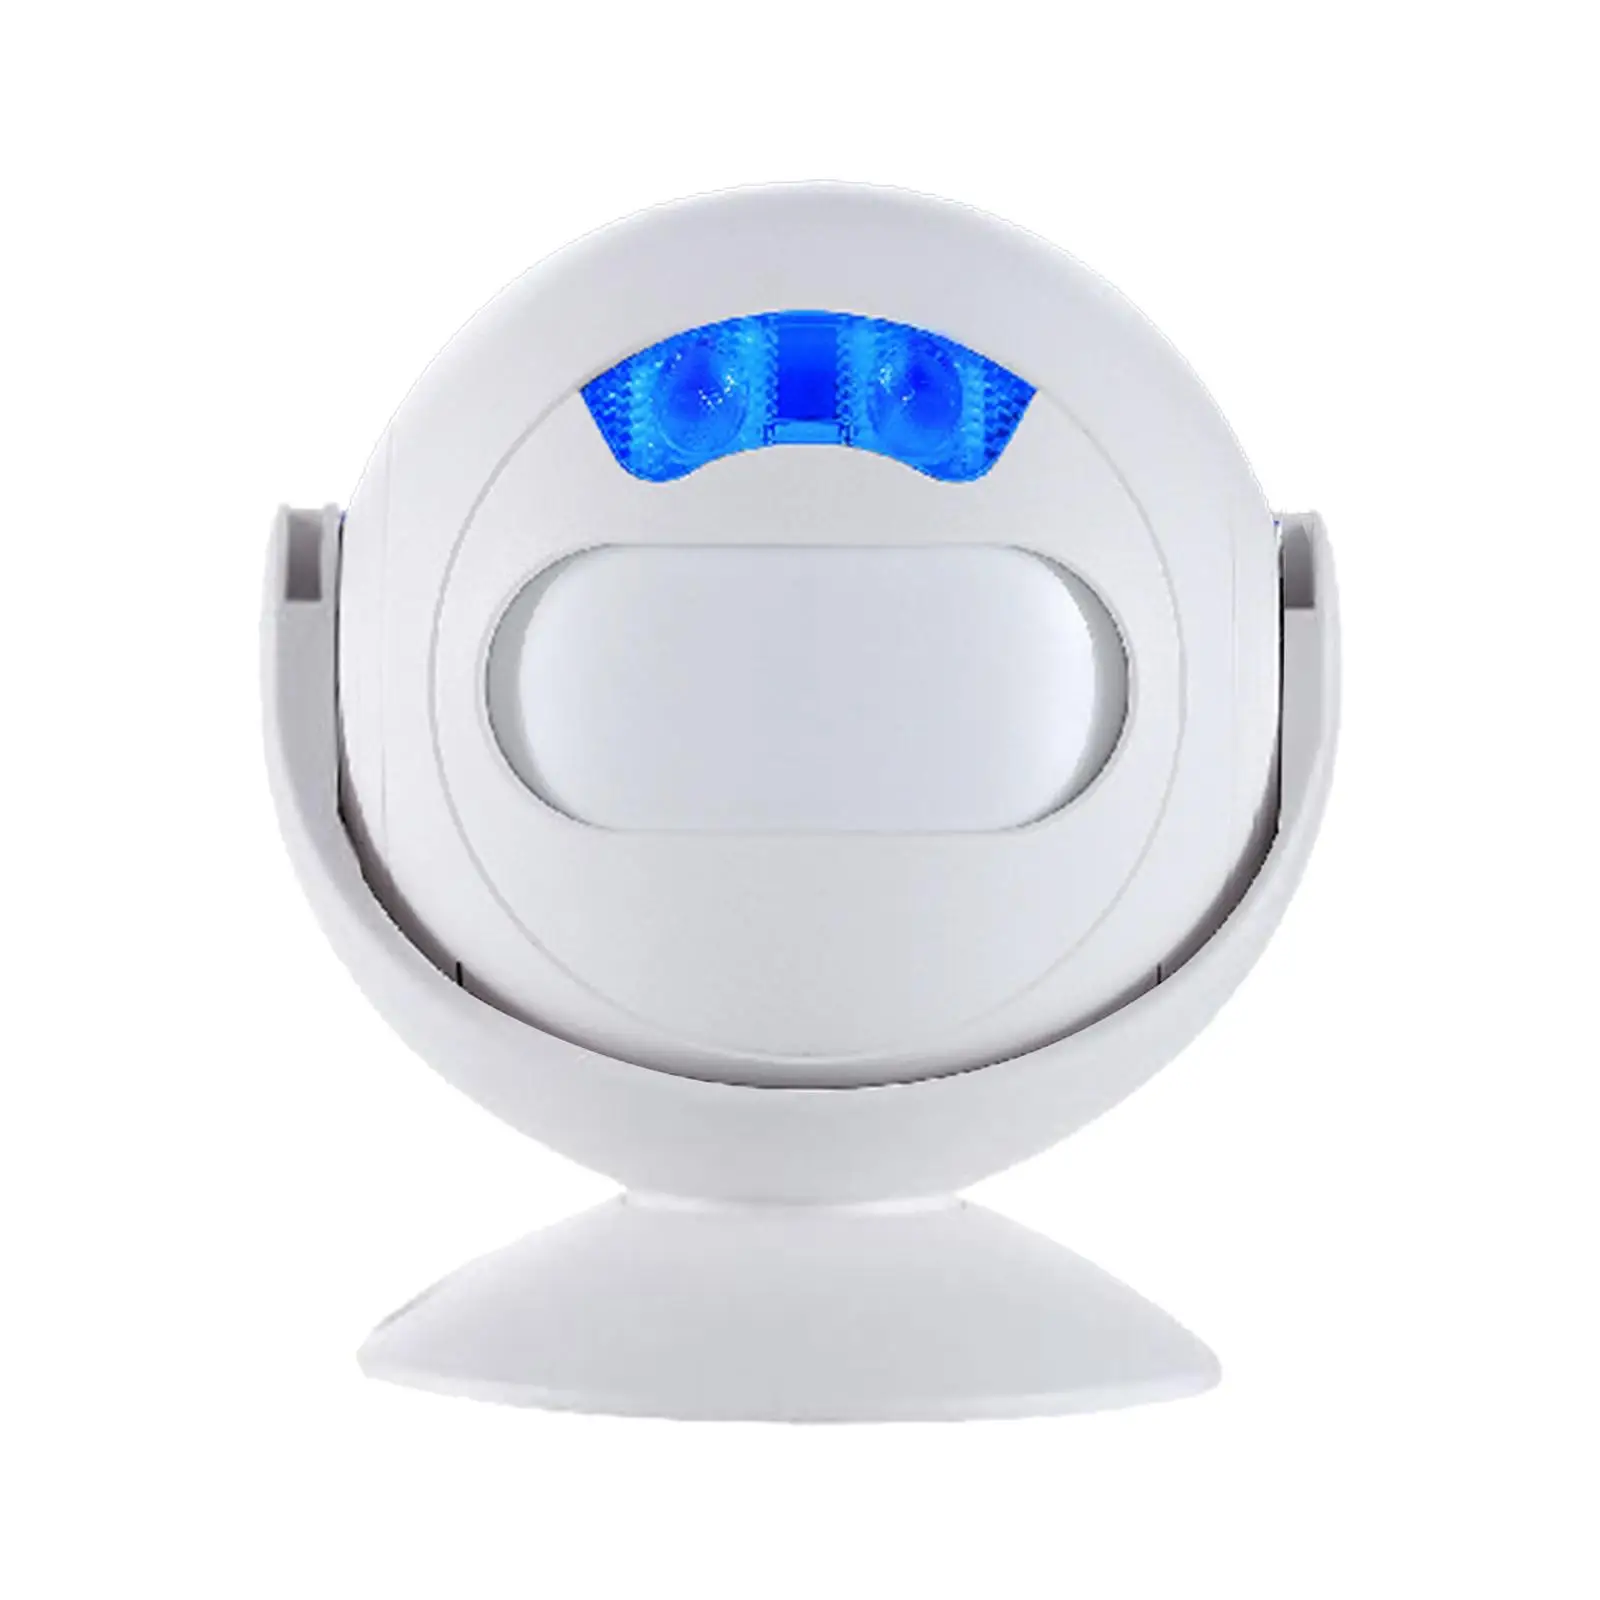  Door Chime Alarm   35 Songs Motion Sensor Guest   for Home, Door ,Business ,Office, Shop